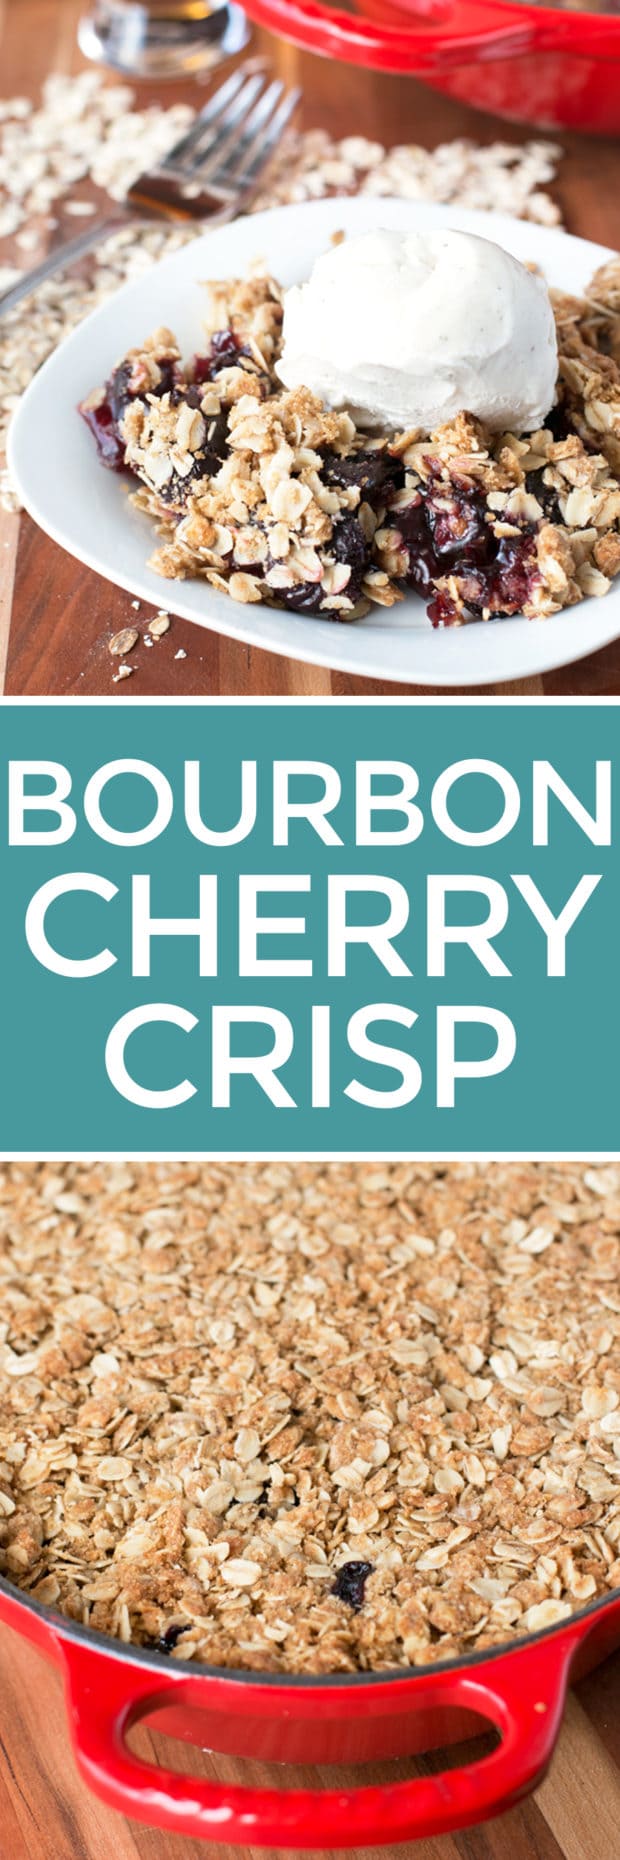 Bourbon Cherry Crisp | cakenknife.com #cherries #bourbon #dessert